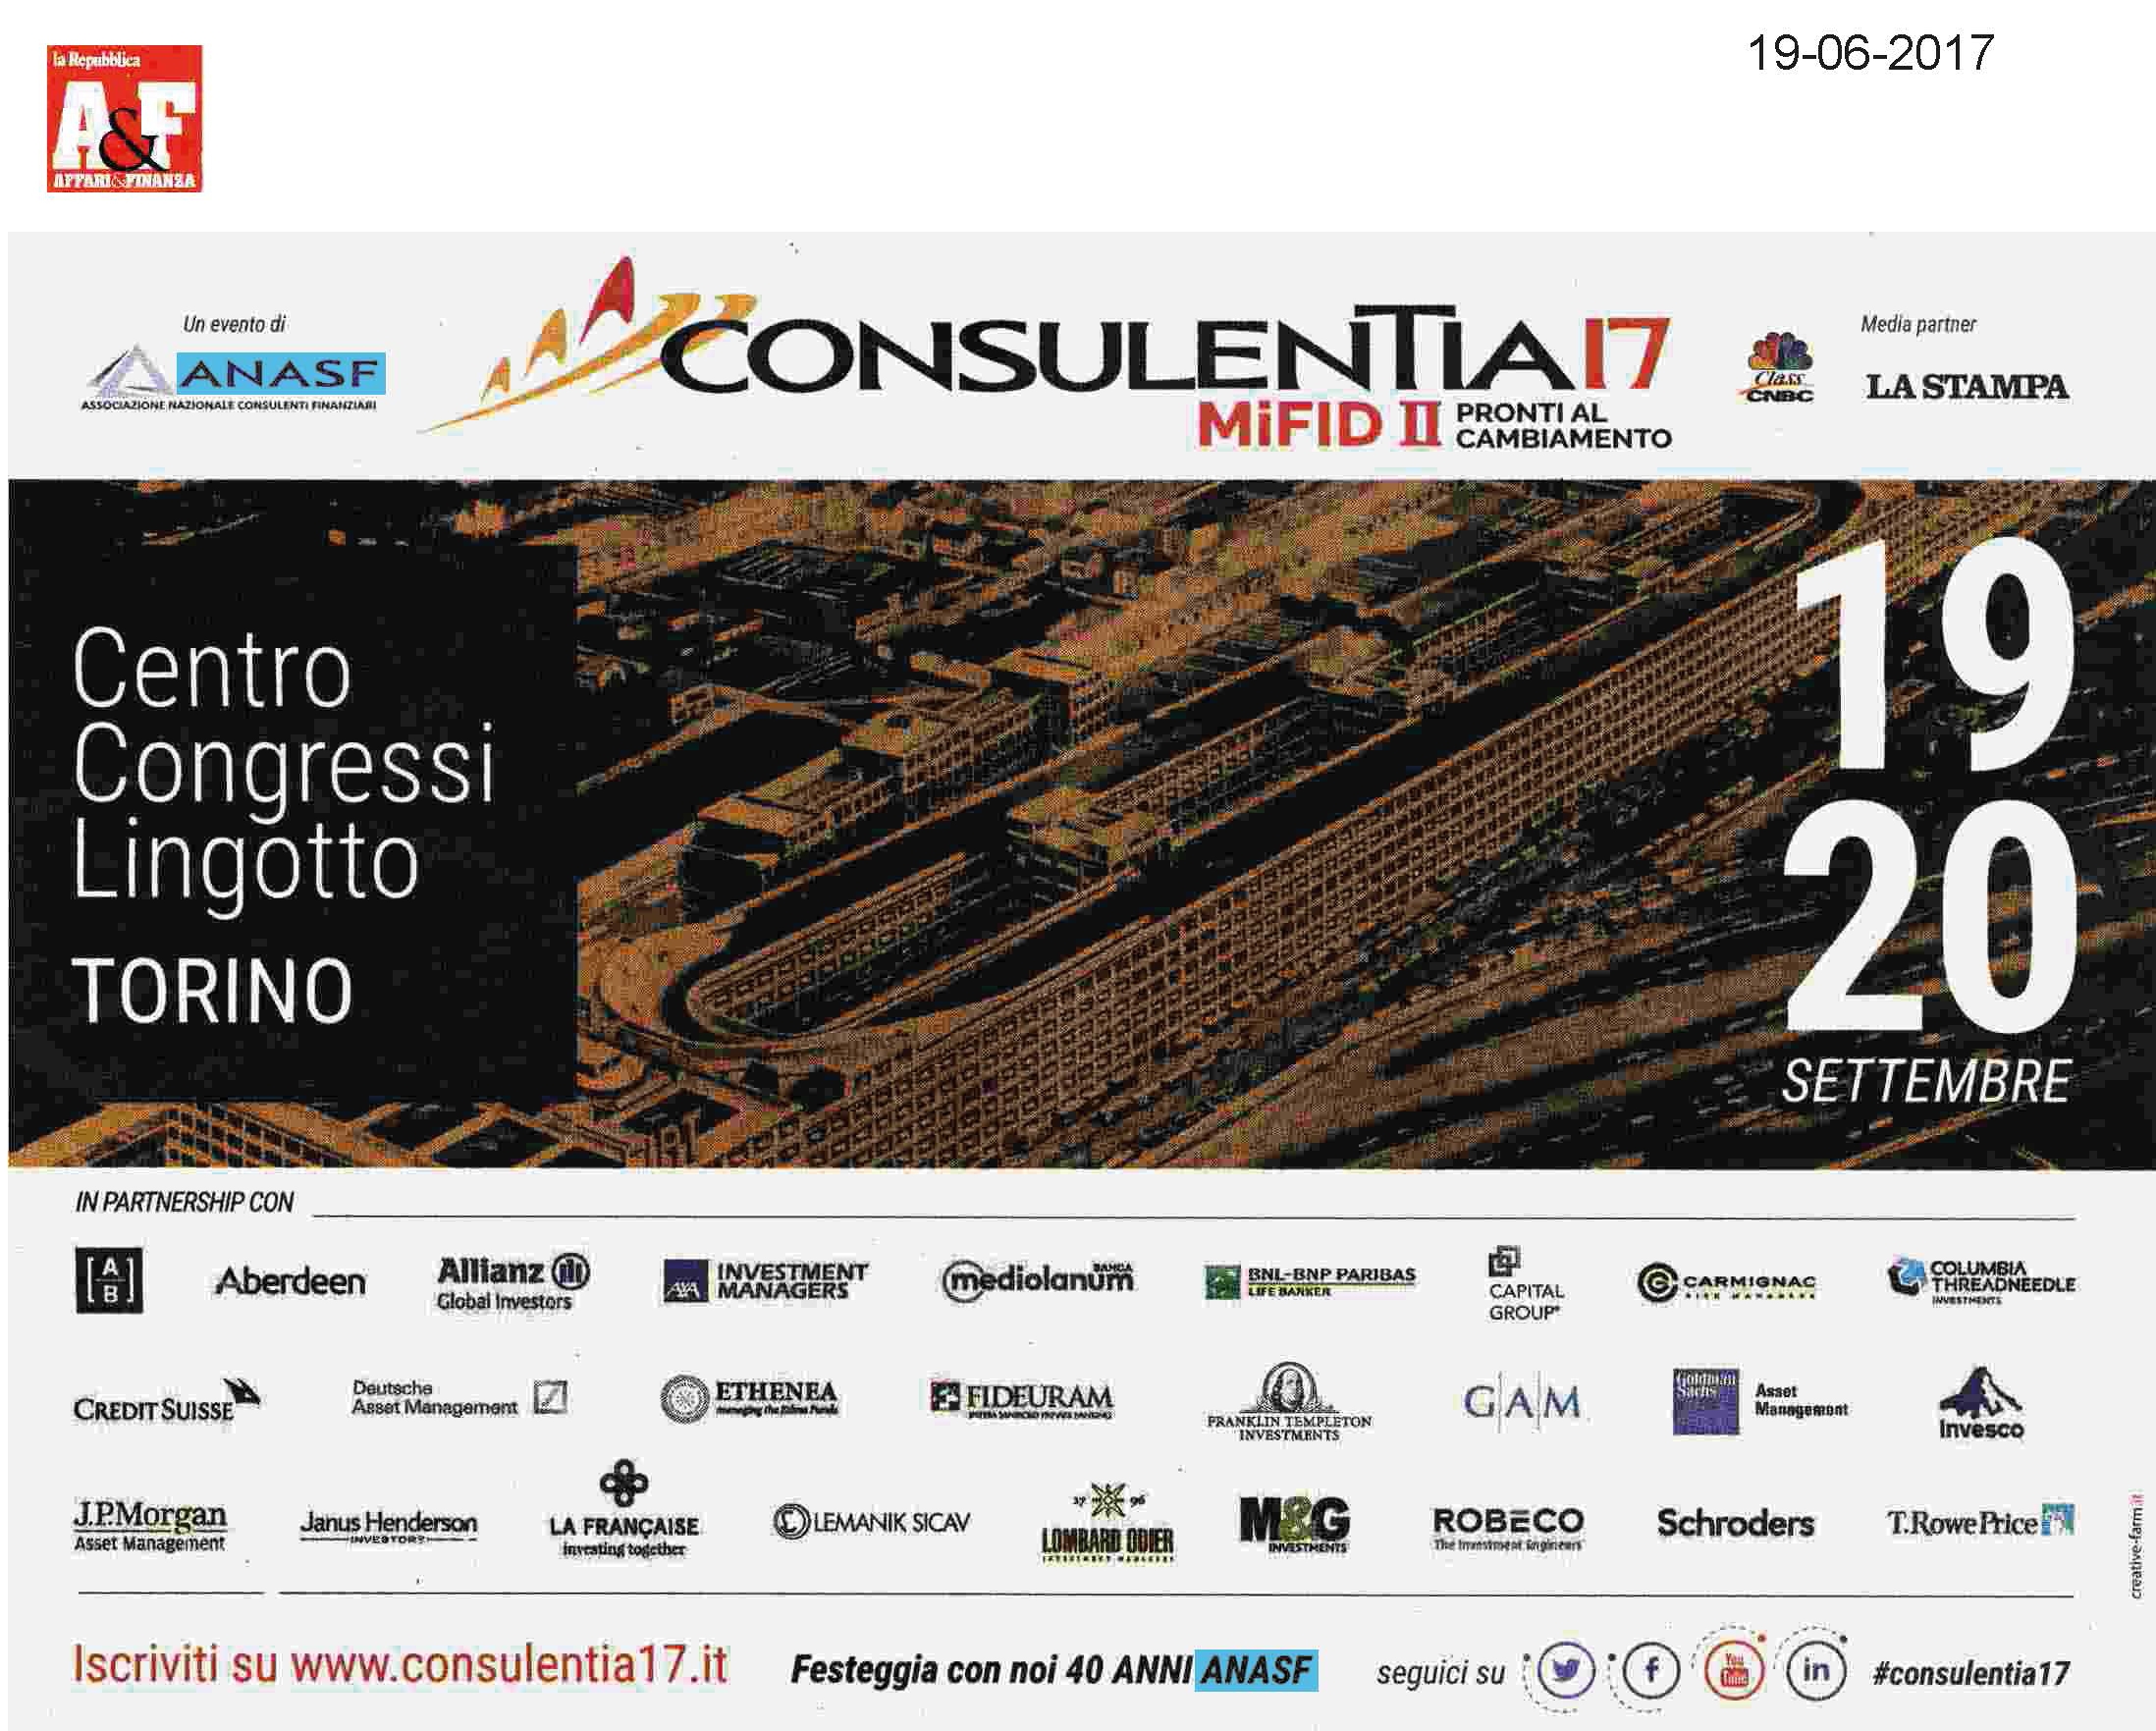 ConsulenTia17 Torino: la pubblicità su Affari&Finanza